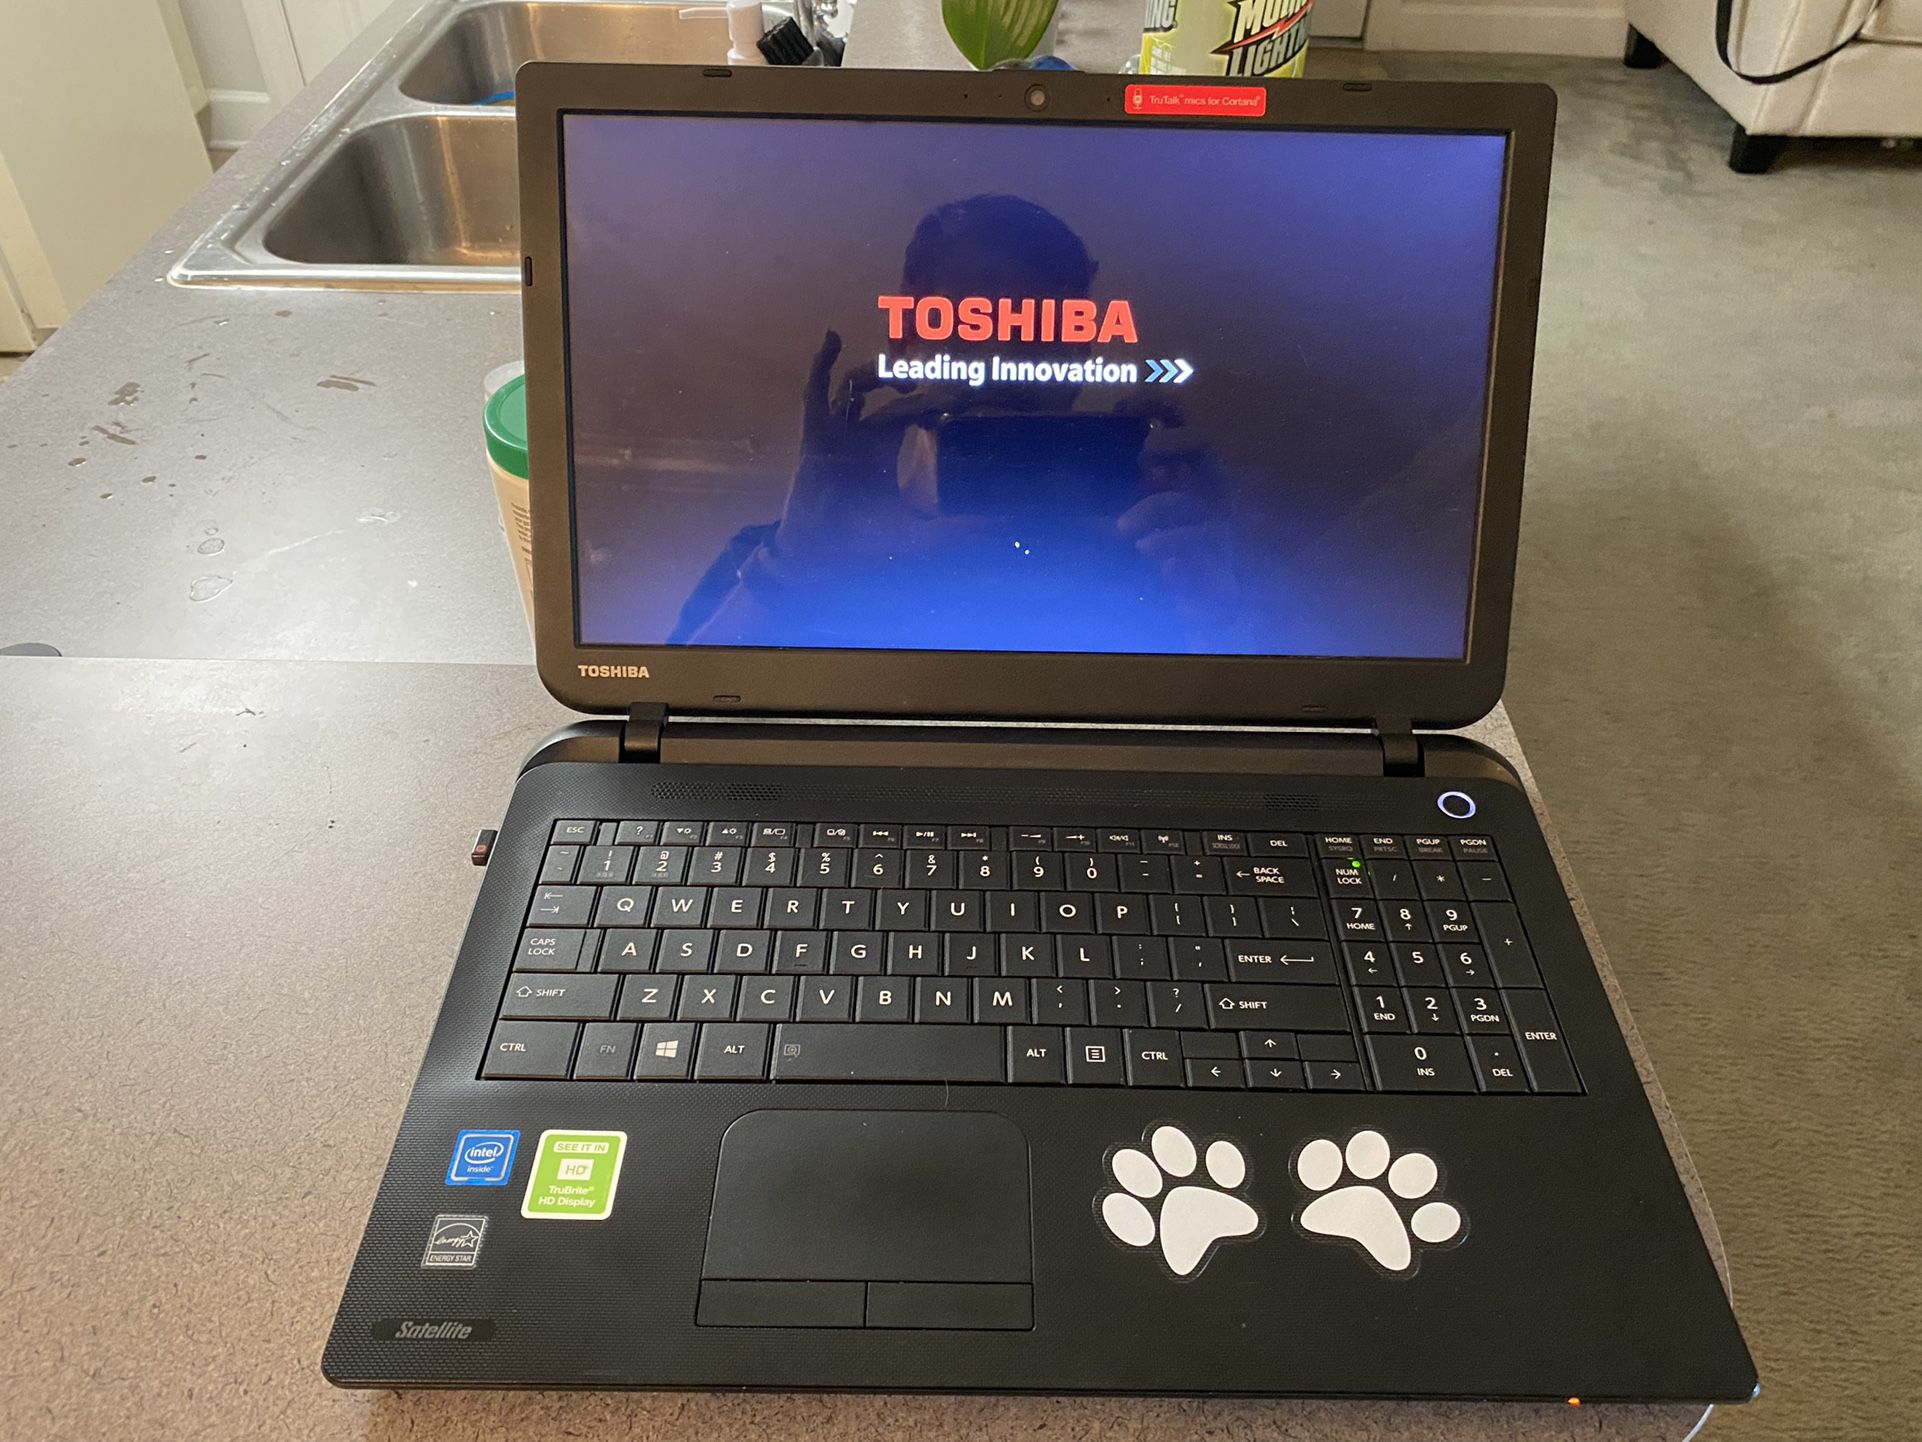 Toshiba Lapto 6 Gig Of Ram